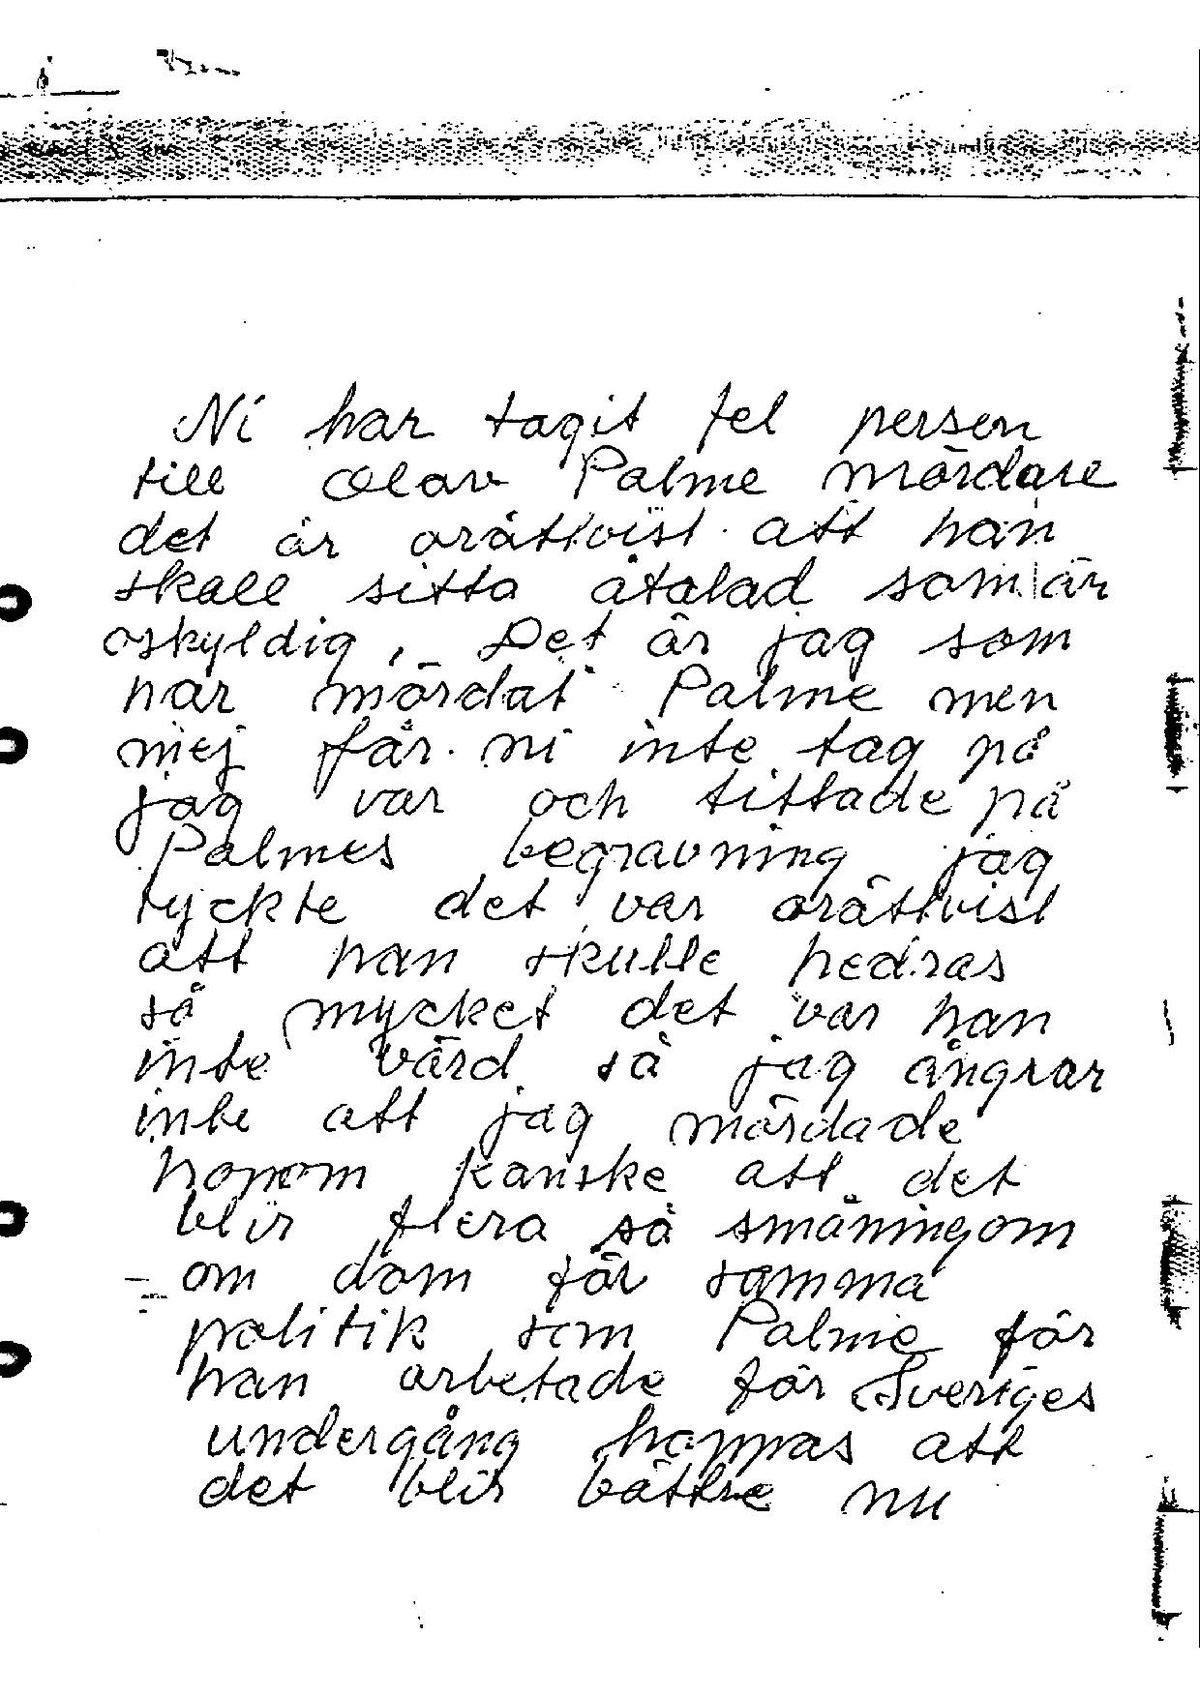 Pol-1986-03-29 D2549-01 bek nnelsebrev-hotbrev-Lisbeth-Palmeoch.pdf